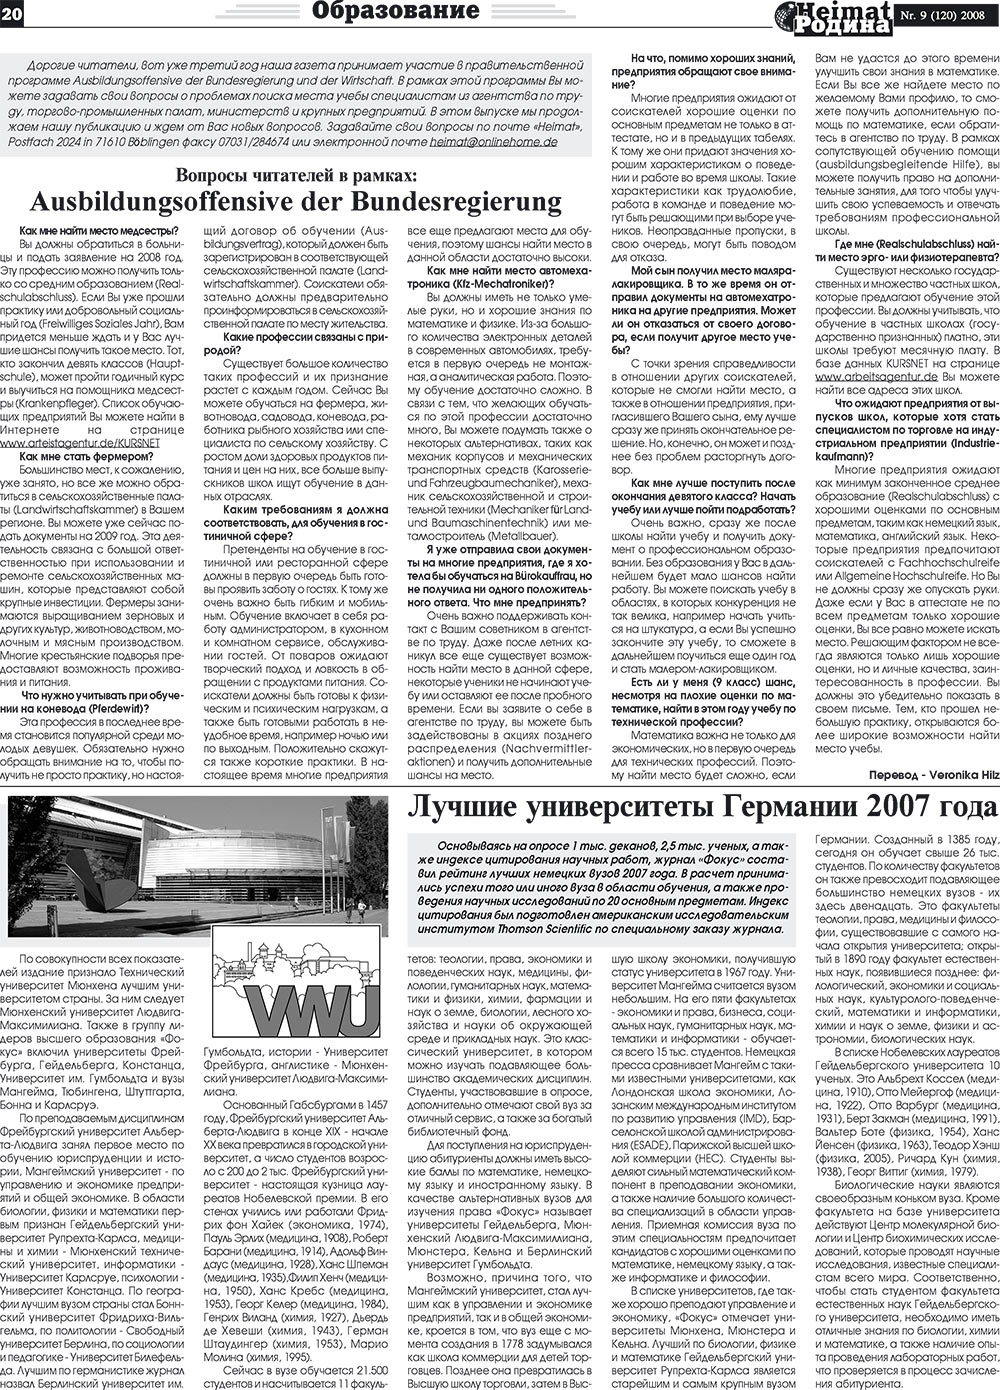 Heimat-Родина (газета). 2008 год, номер 9, стр. 20